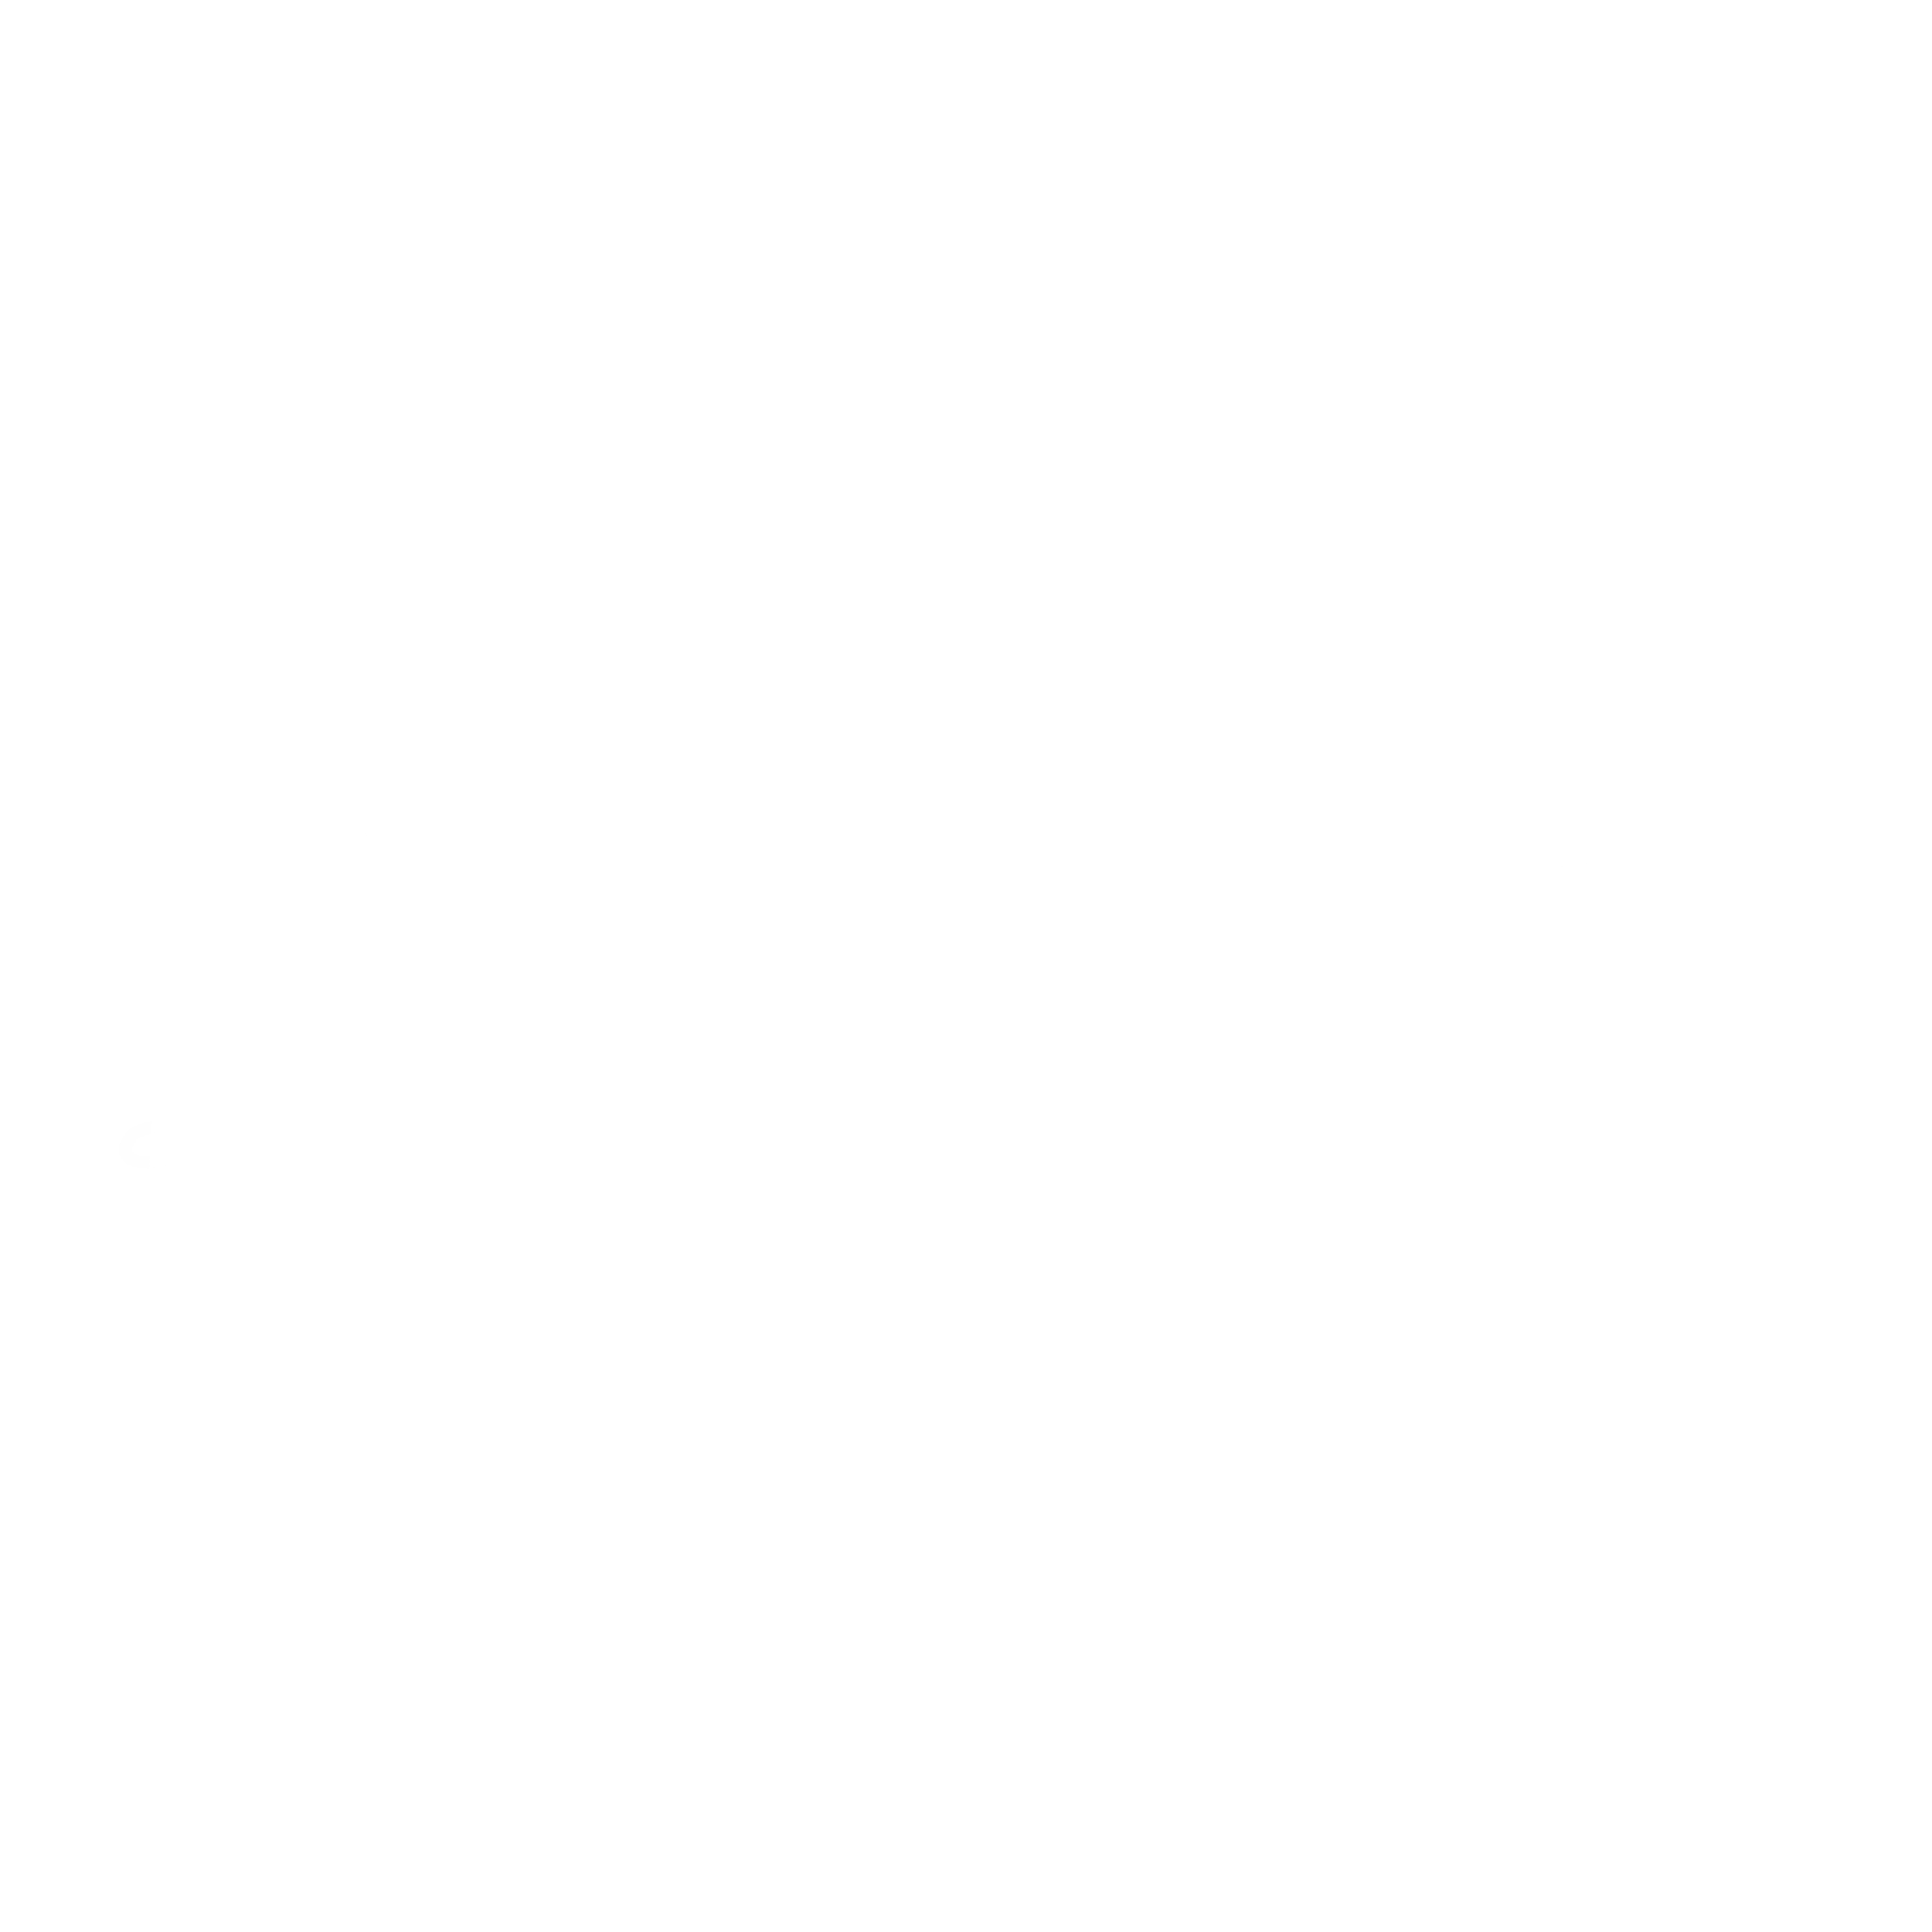 Jacob Bennett